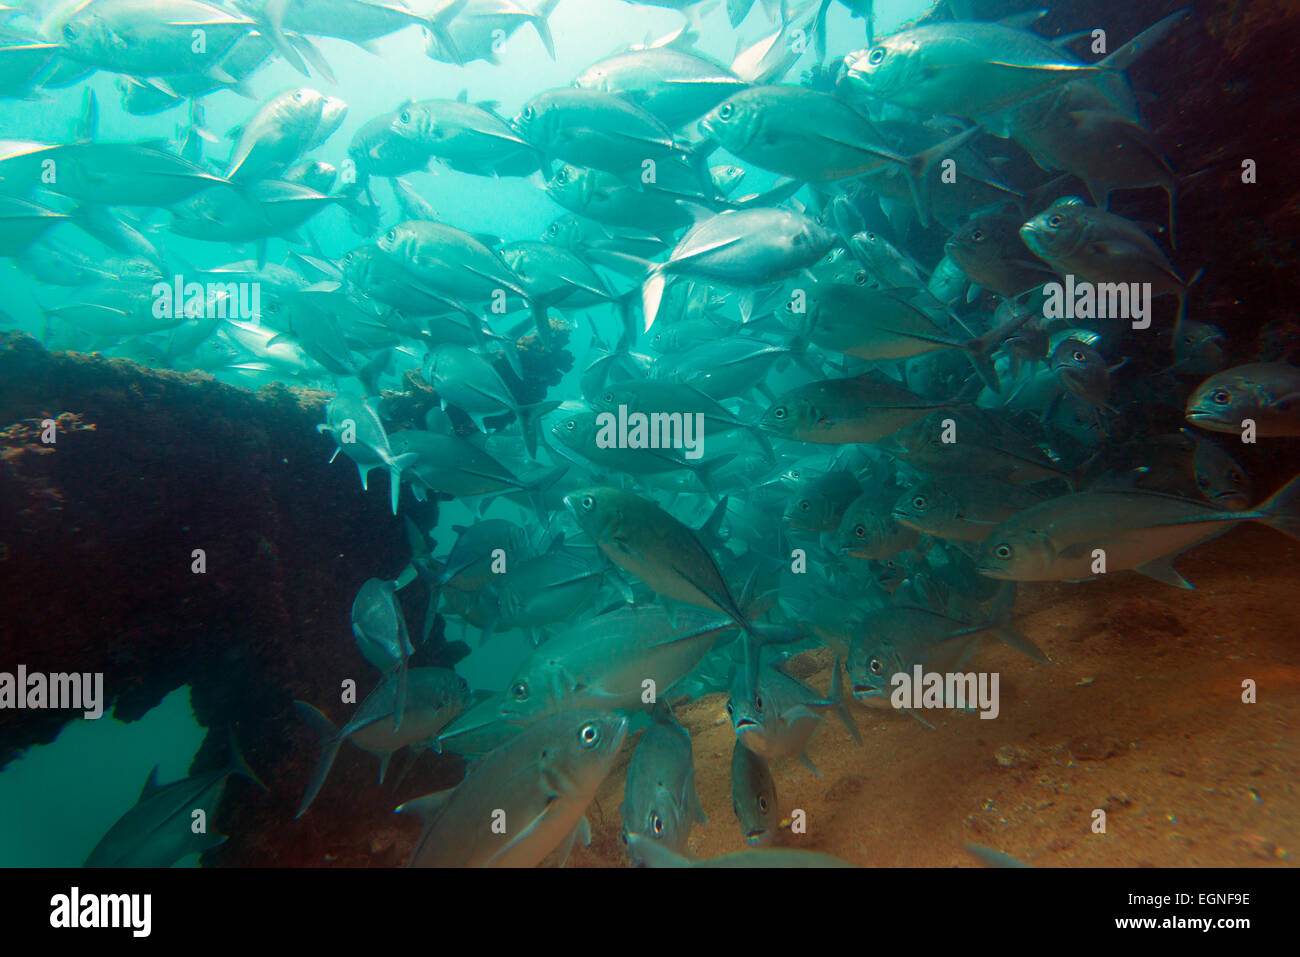 Il Sud Est Asiatico, Filippine, Luzon, Subic Bay, jack pesce al relitto immersioni Foto Stock